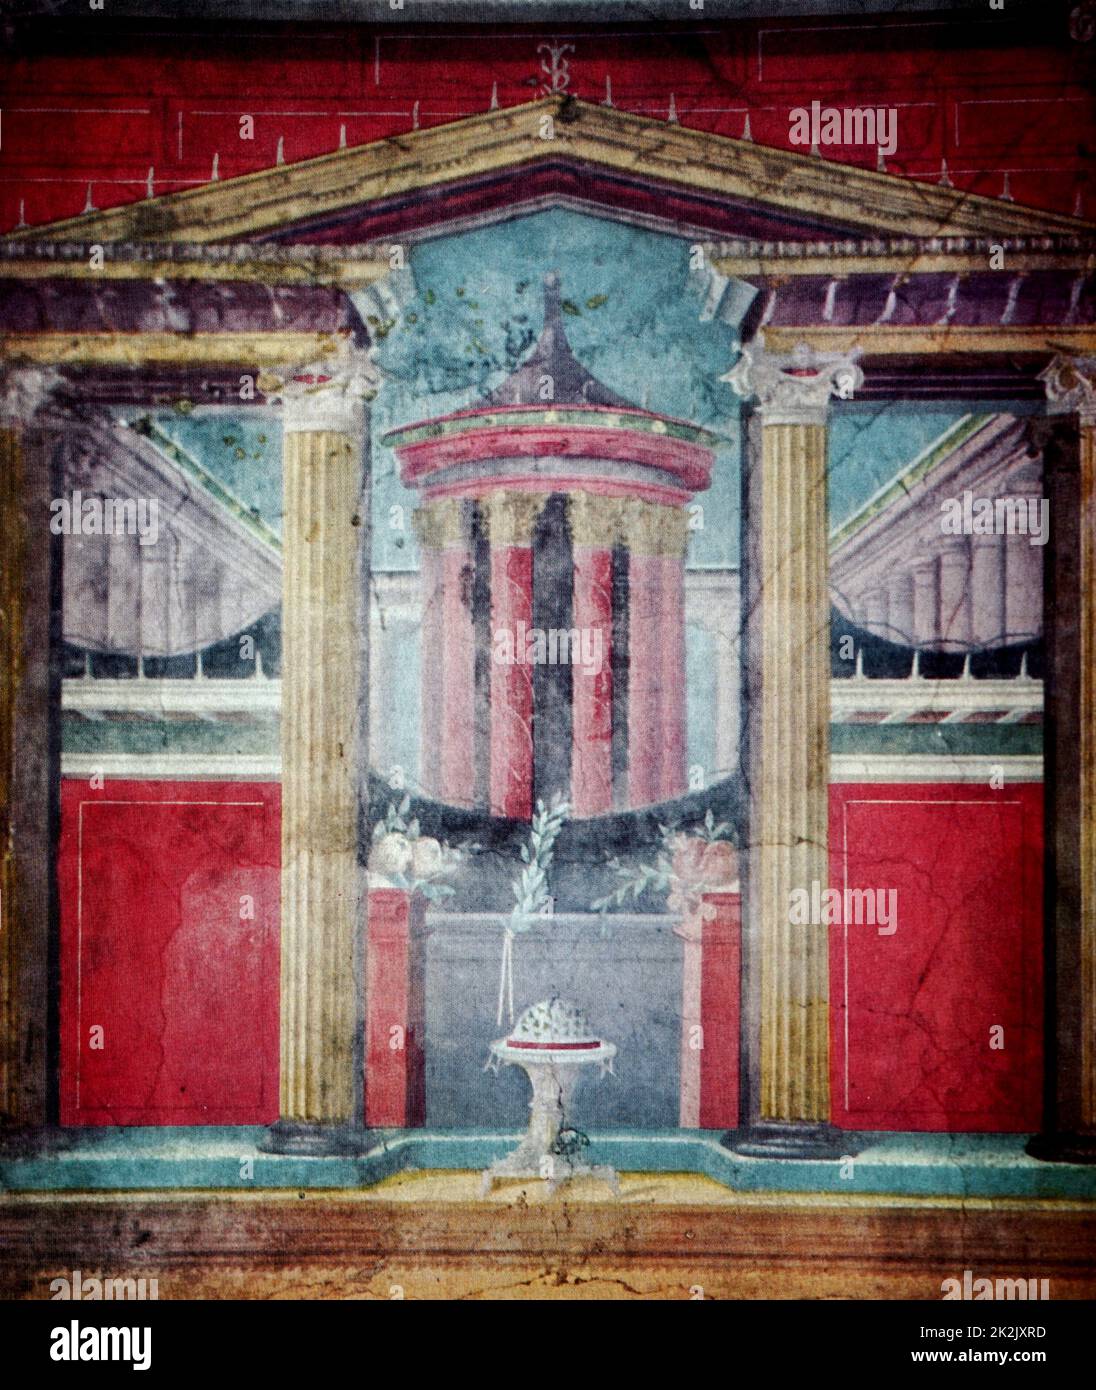 Détail d'une fresque sur l'architecture romaine antique. En date du 12e siècle Banque D'Images